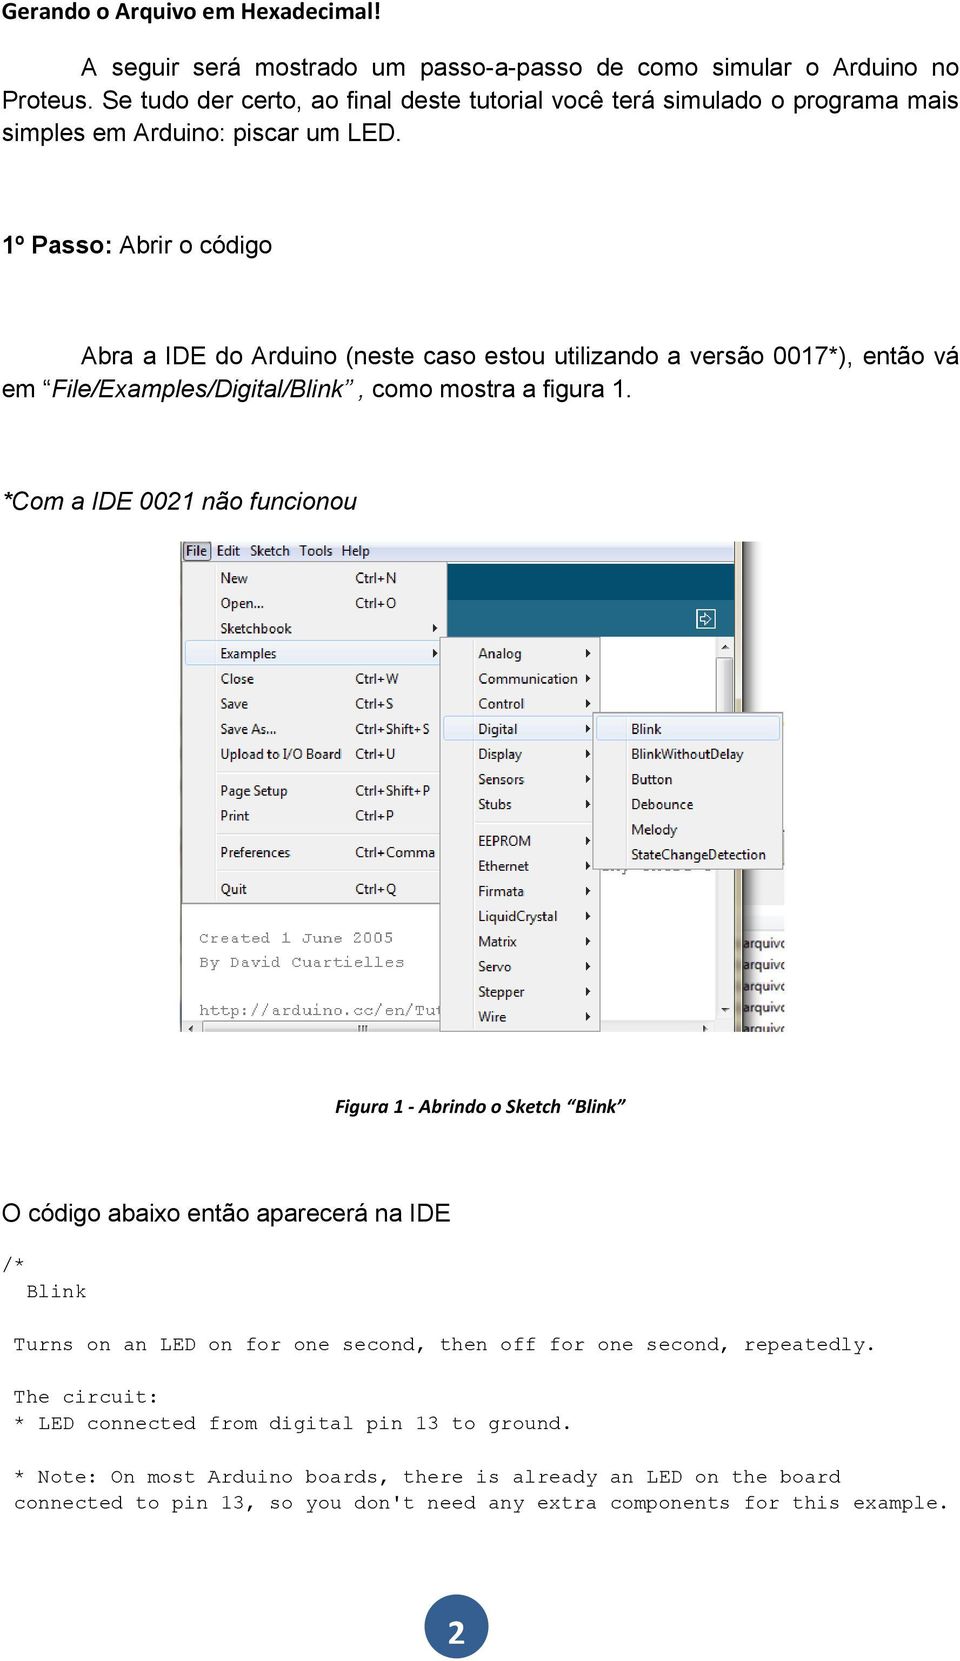 1º Passo: Abrir o código Abra a IDE do Arduino (neste caso estou utilizando a versão 0017*), então vá em File/Examples/Digital/Blink, como mostra a figura 1.